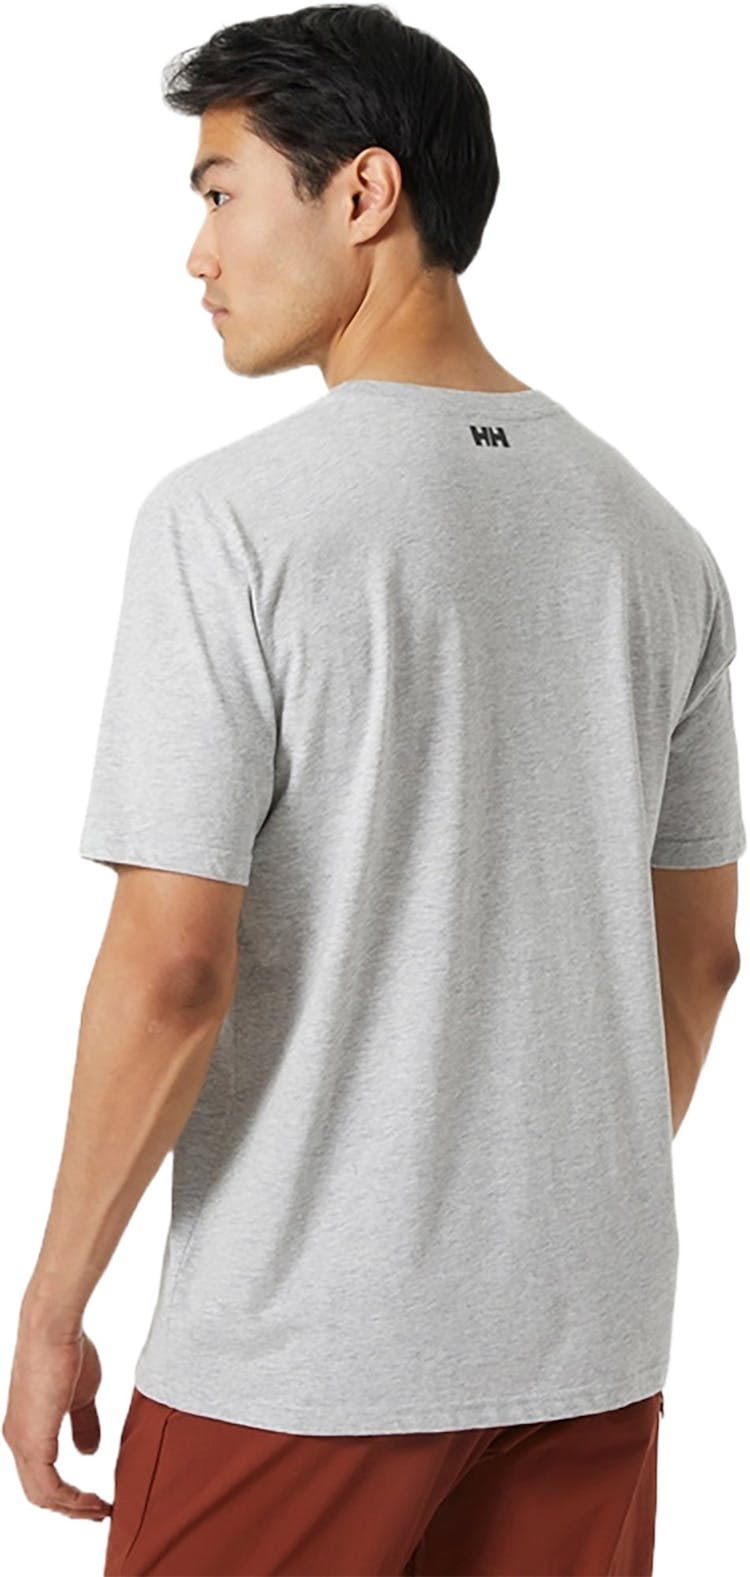 Numéro de l'image de la galerie de produits 2 pour le produit T-shirt à logo Hh® Tech - Homme